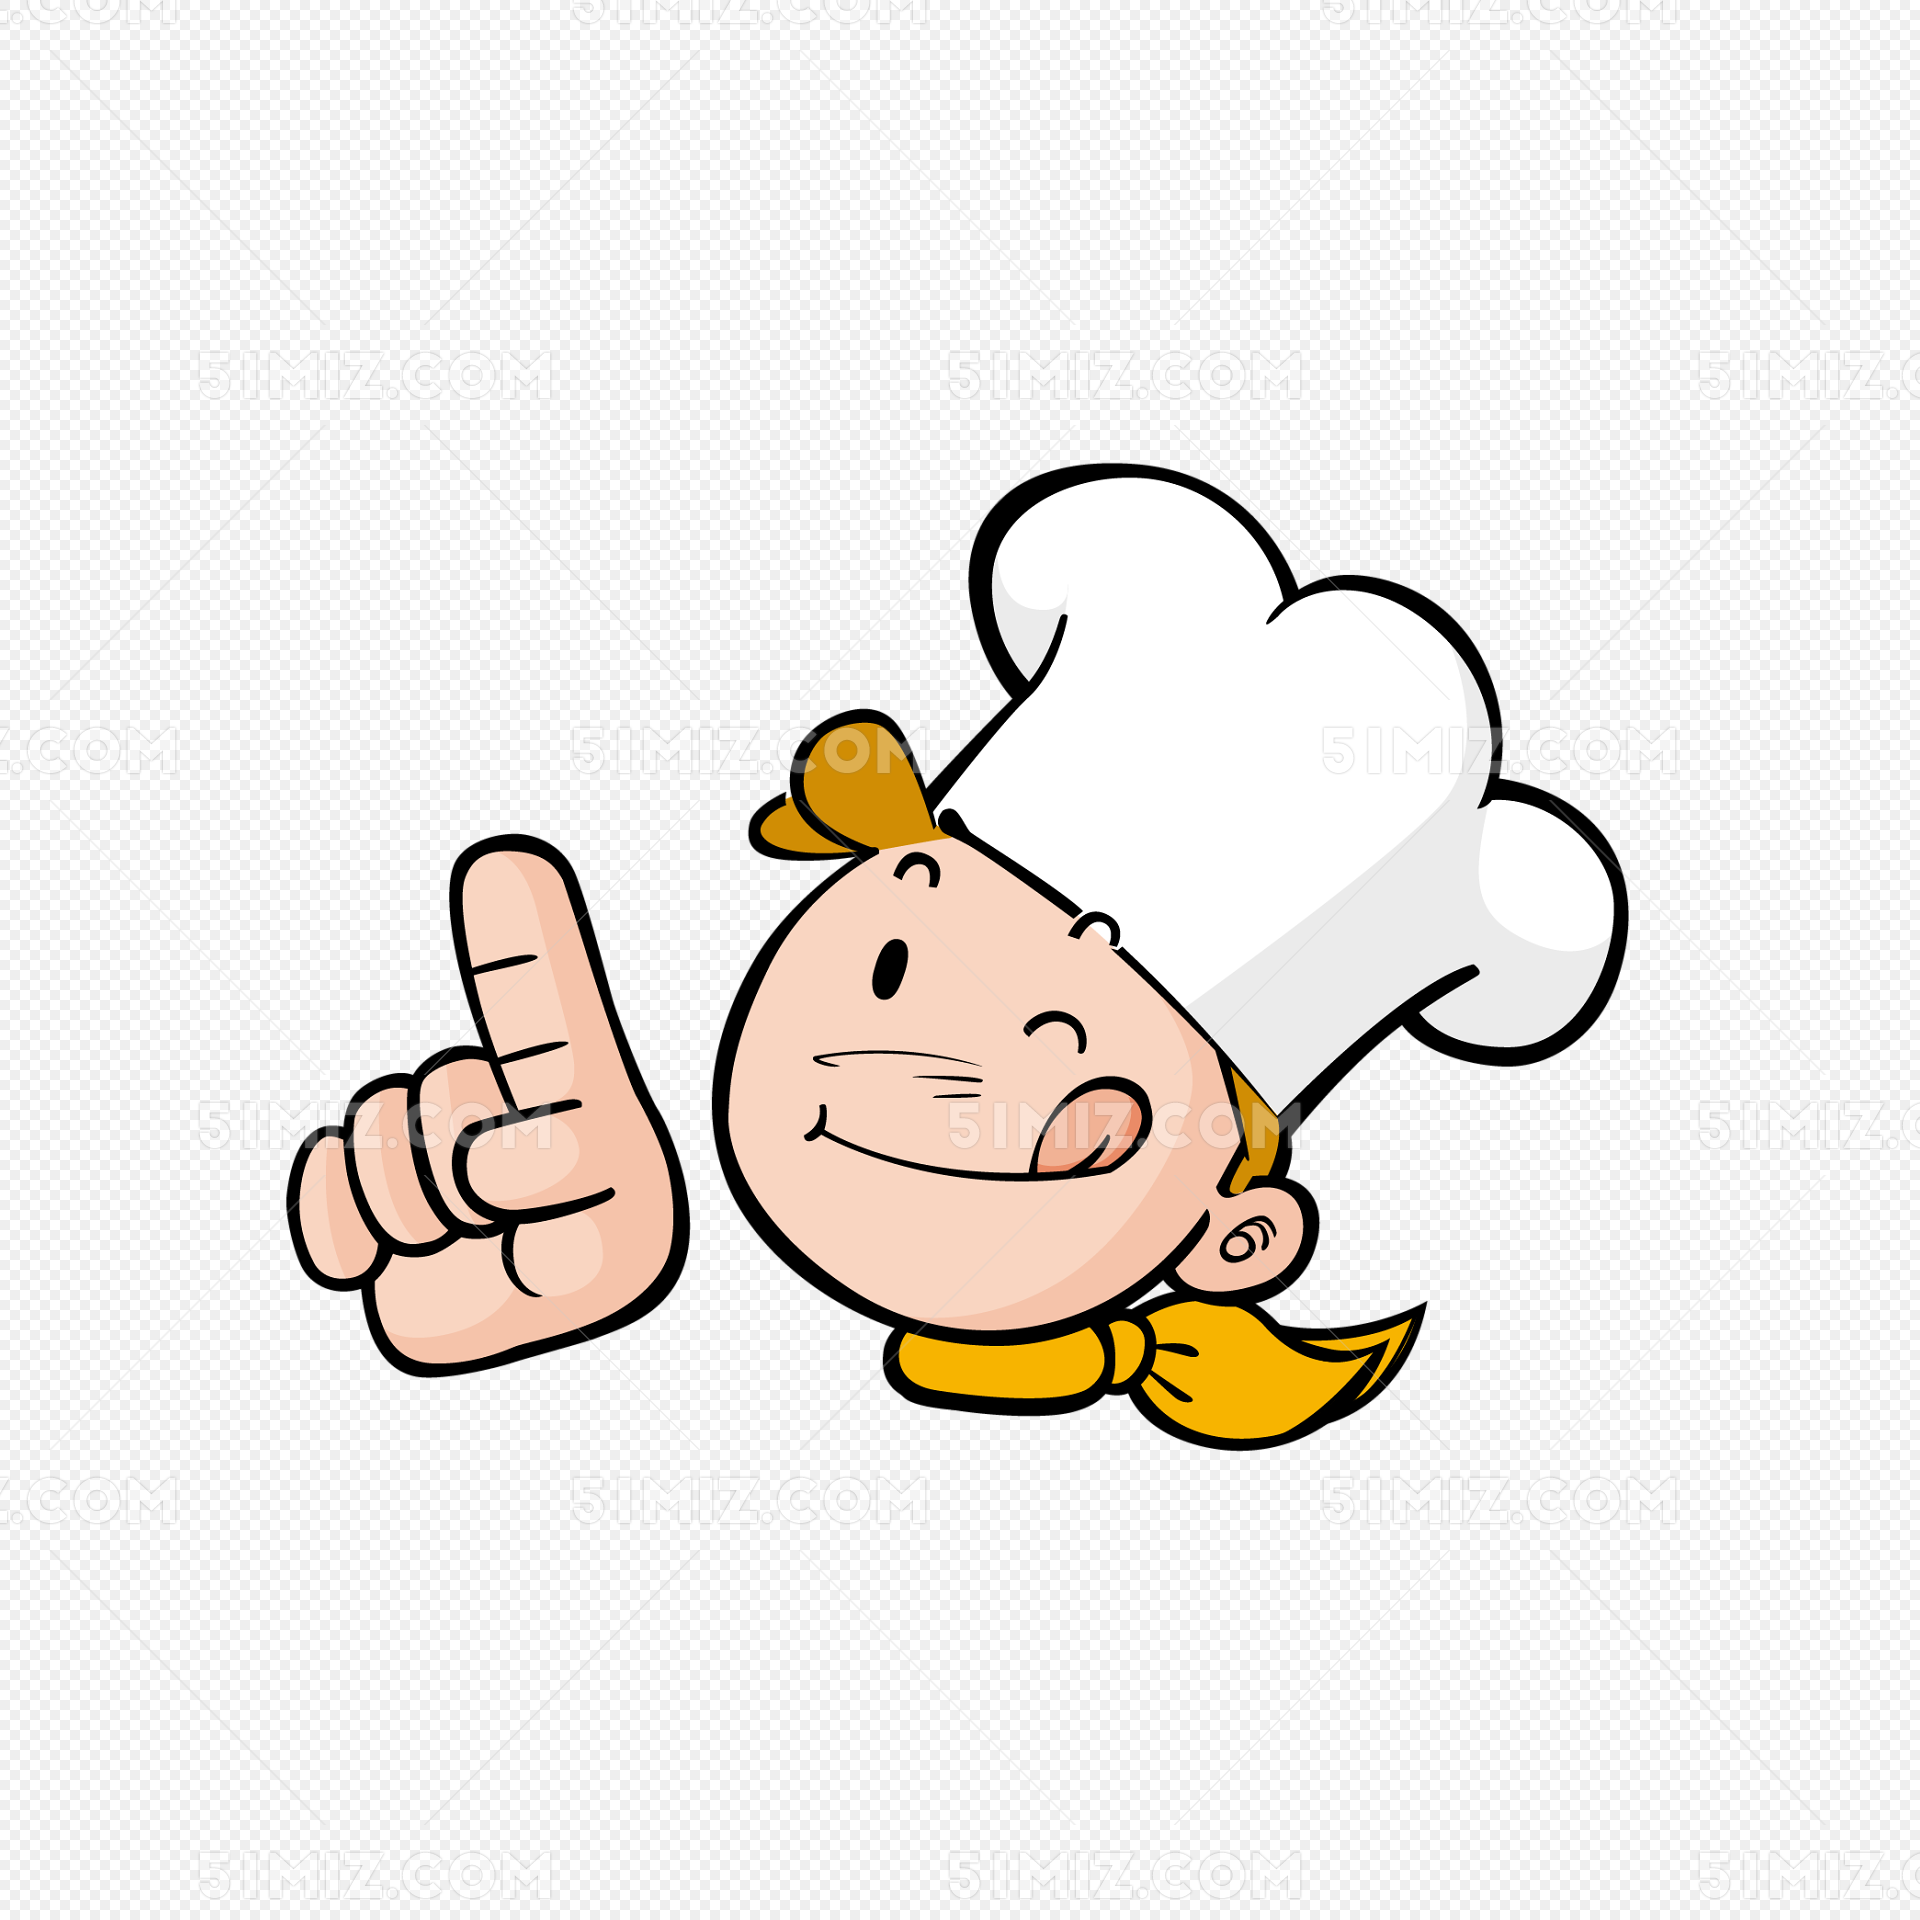 卡通厨师免费下载图片素材免费下载 - 觅知网